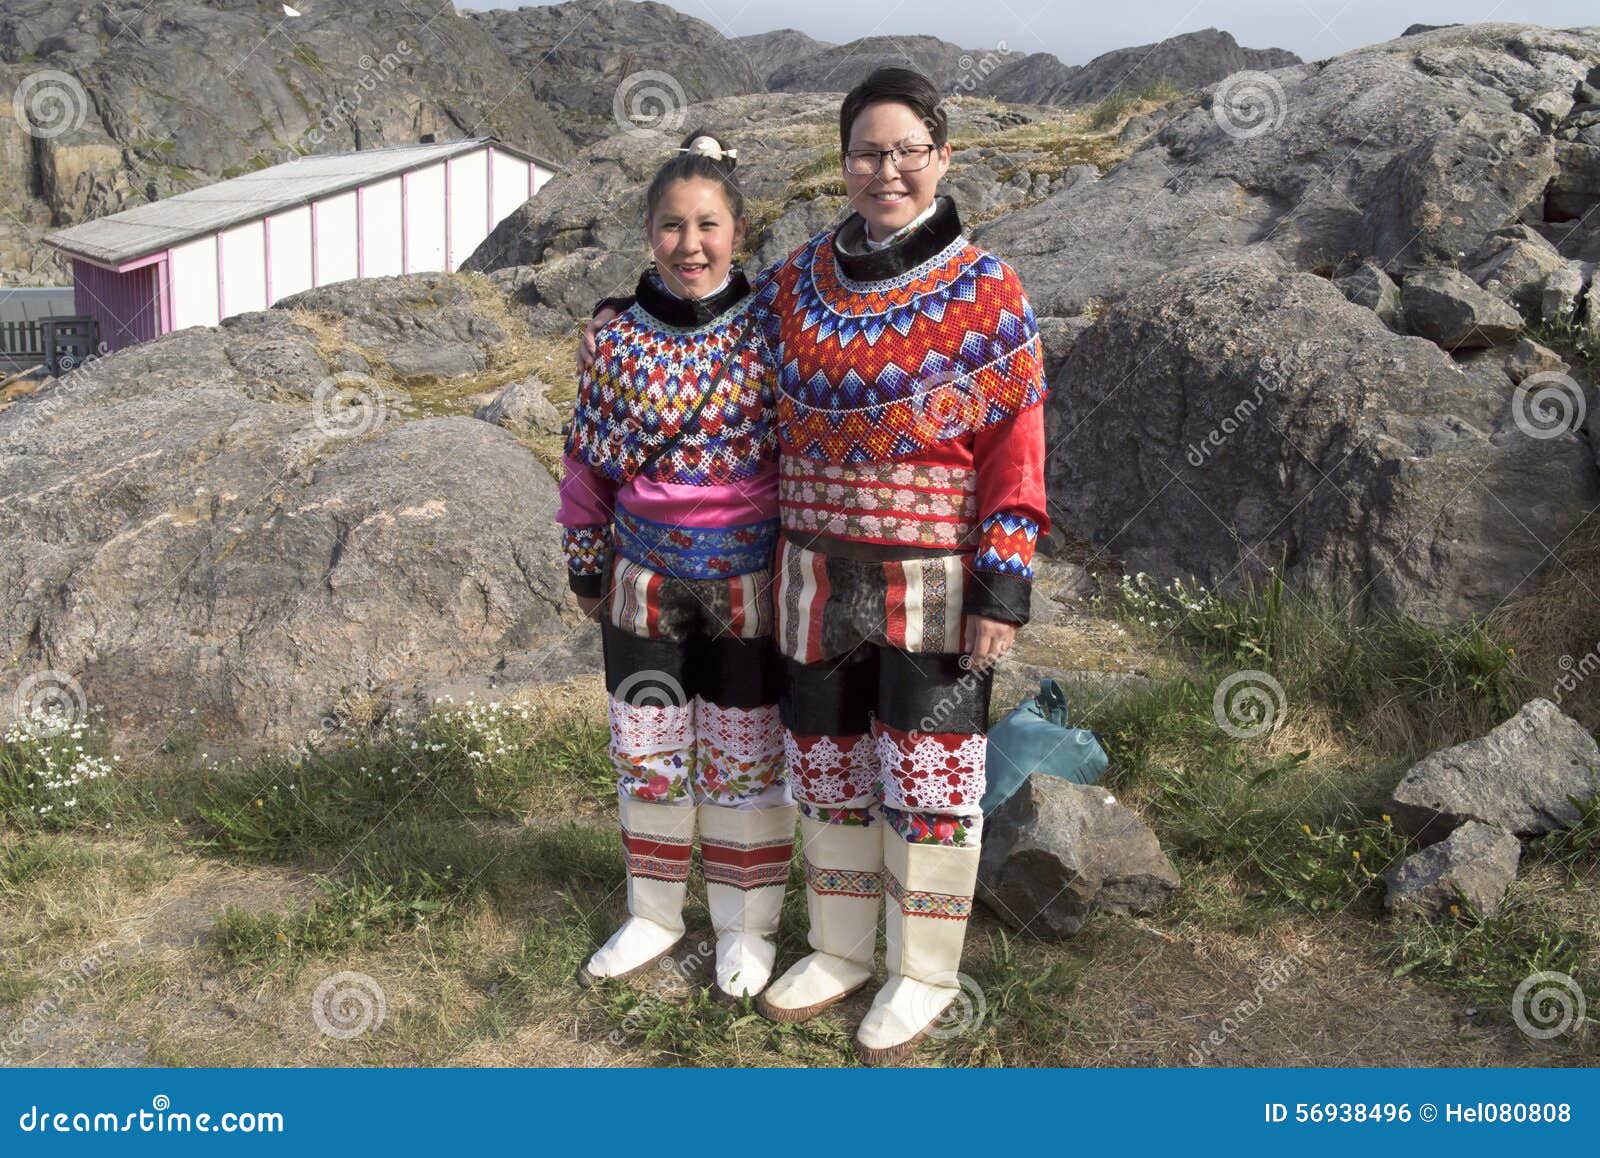 Paquete o empaquetar diapositiva fecha Mujeres Del Inuit En Groenlandia Foto editorial - Imagen de inuit, mujer:  56938496